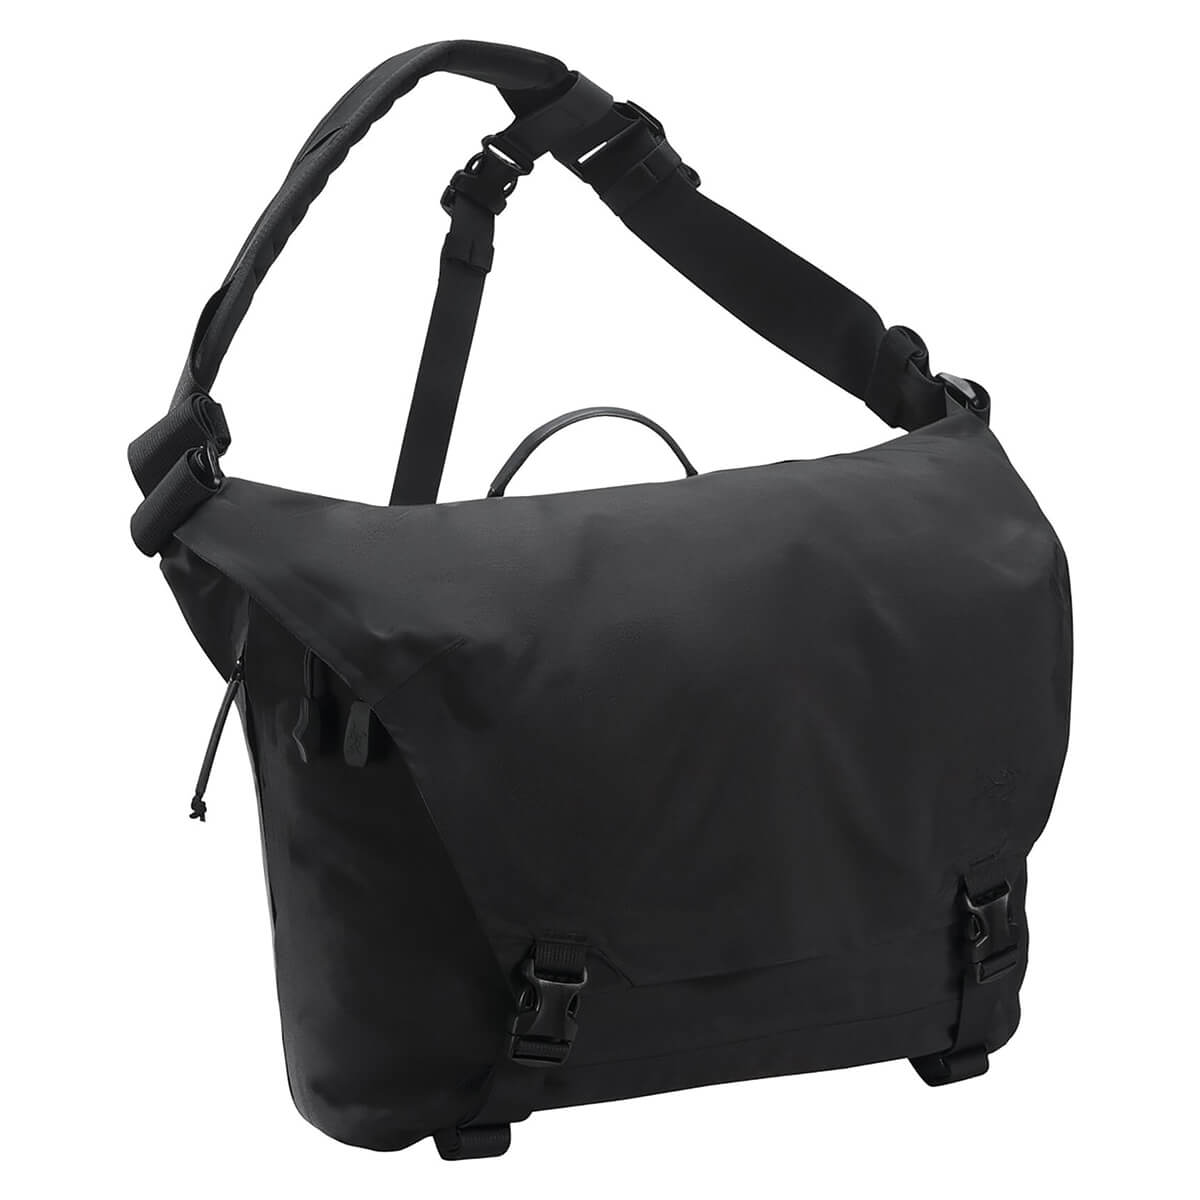 Courier Bag 15 Black